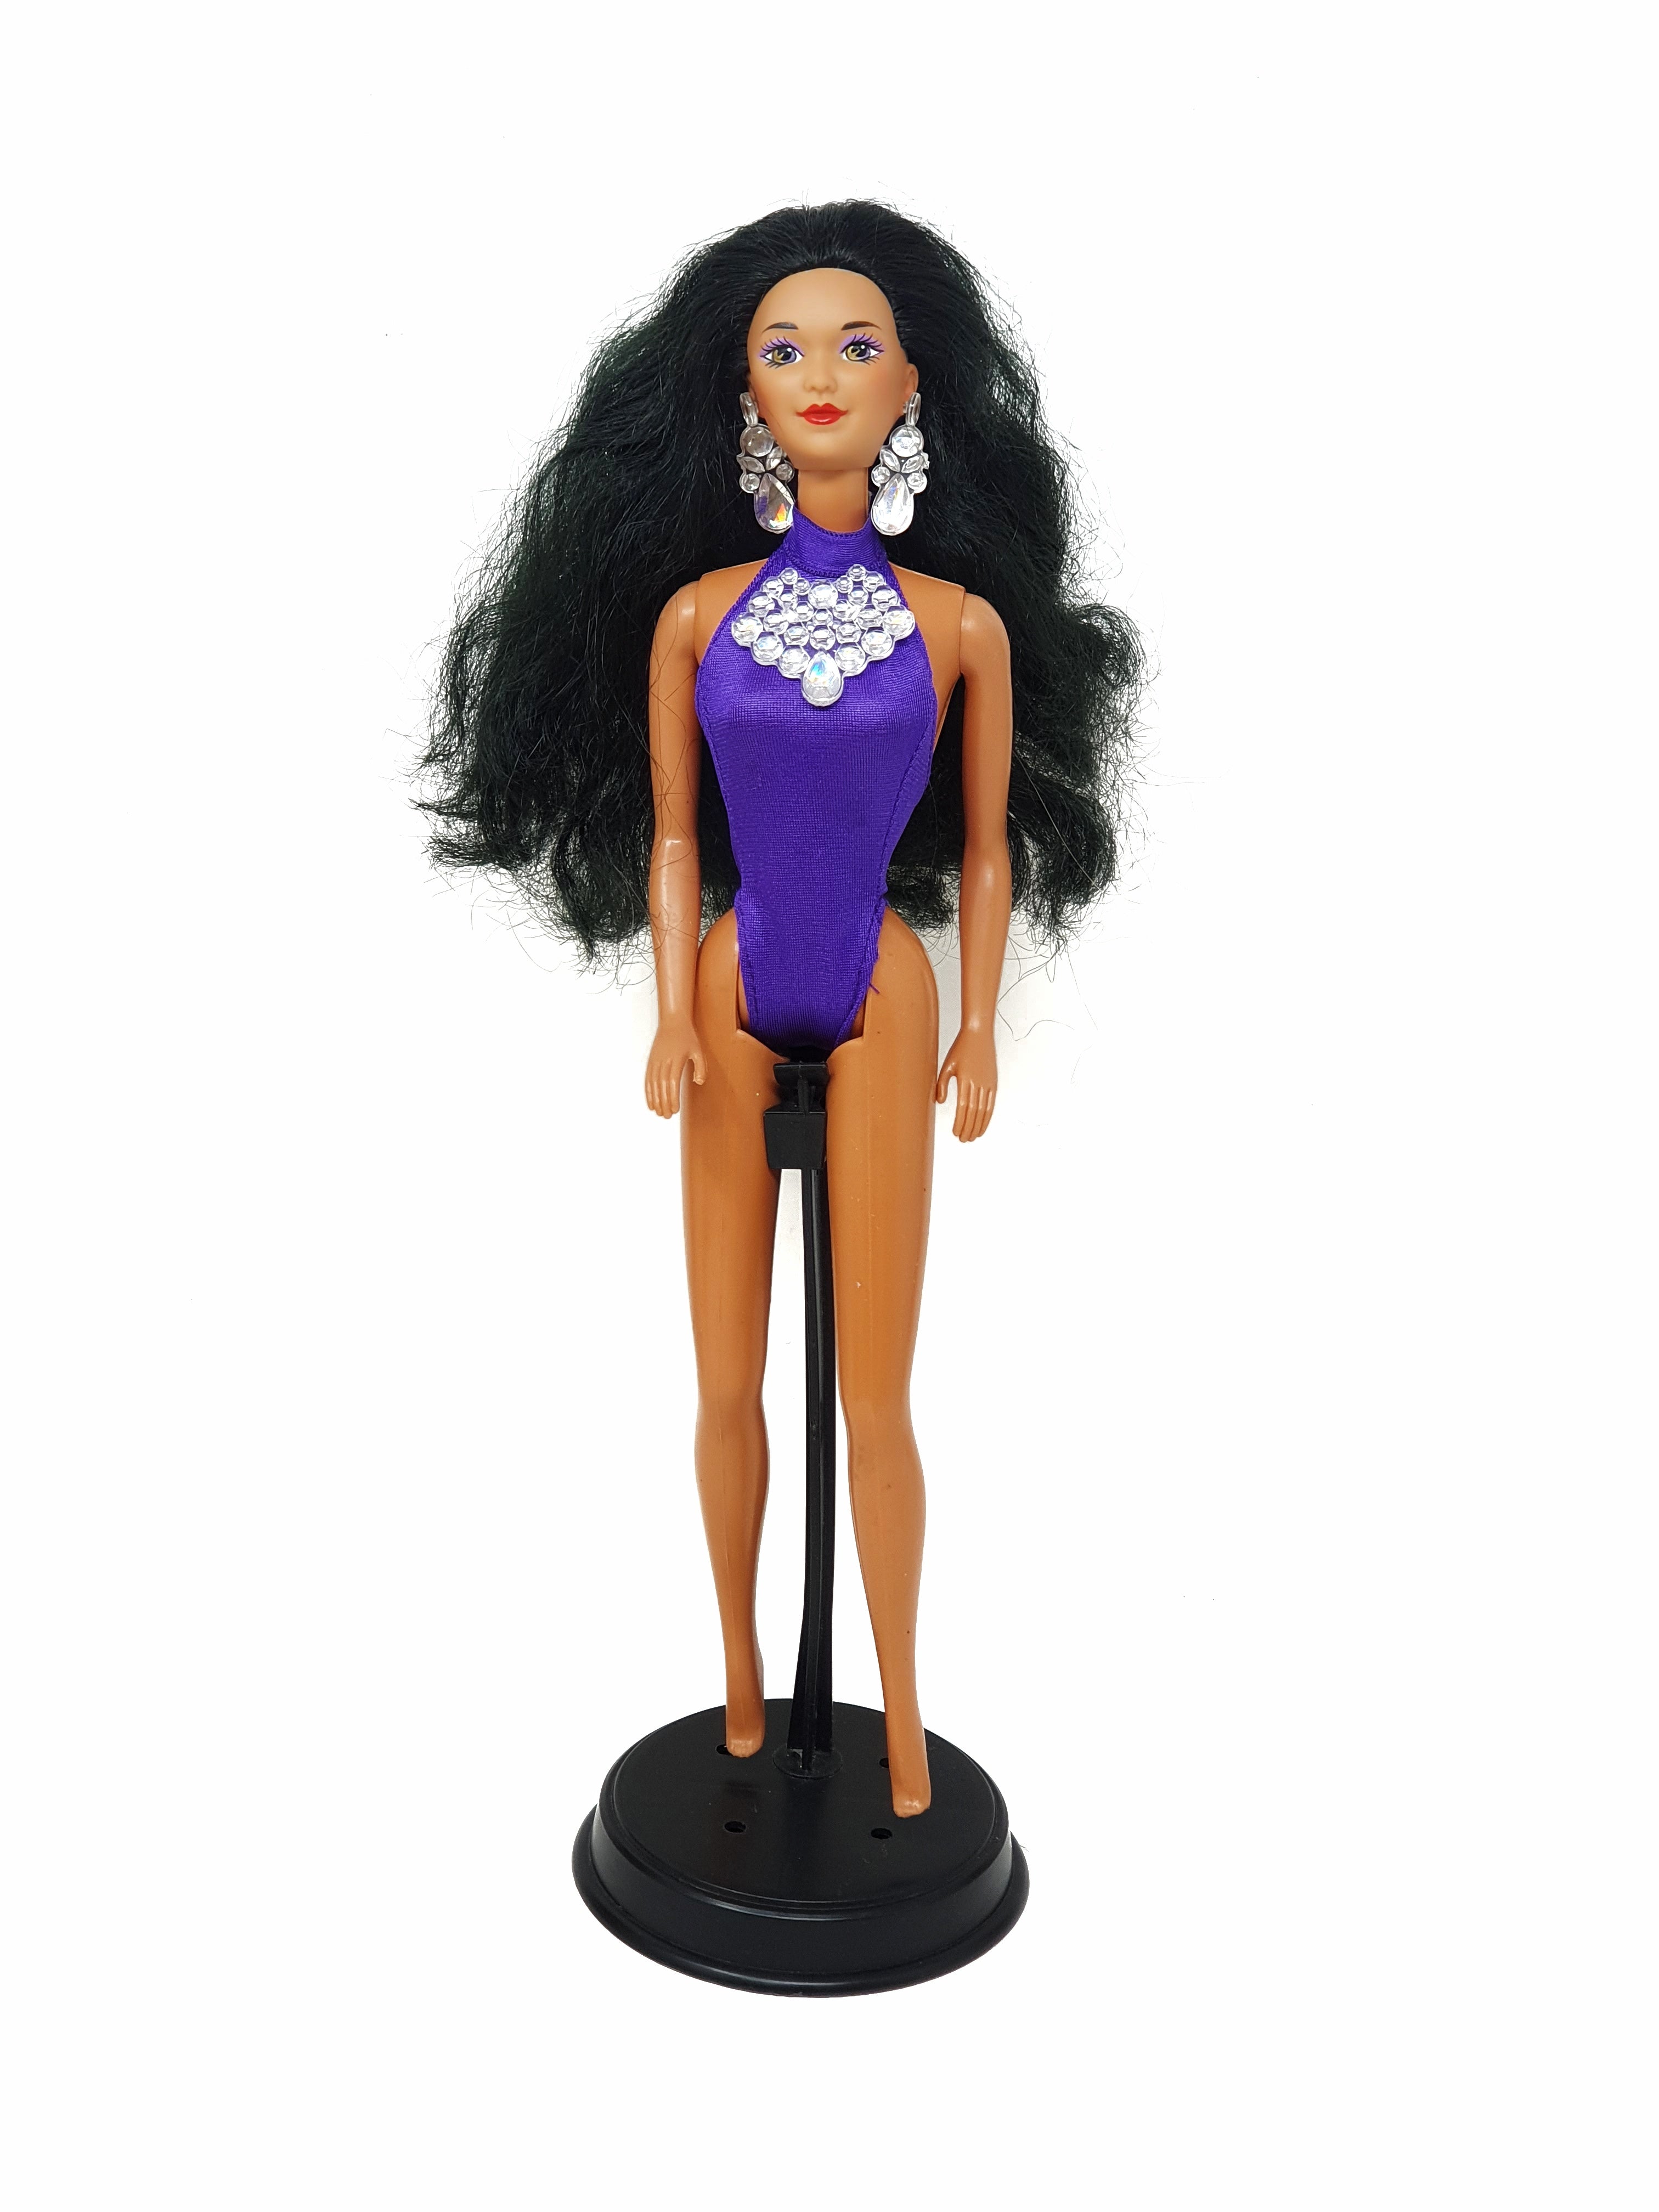 Kira Sun Jewel, 1993 Mattel